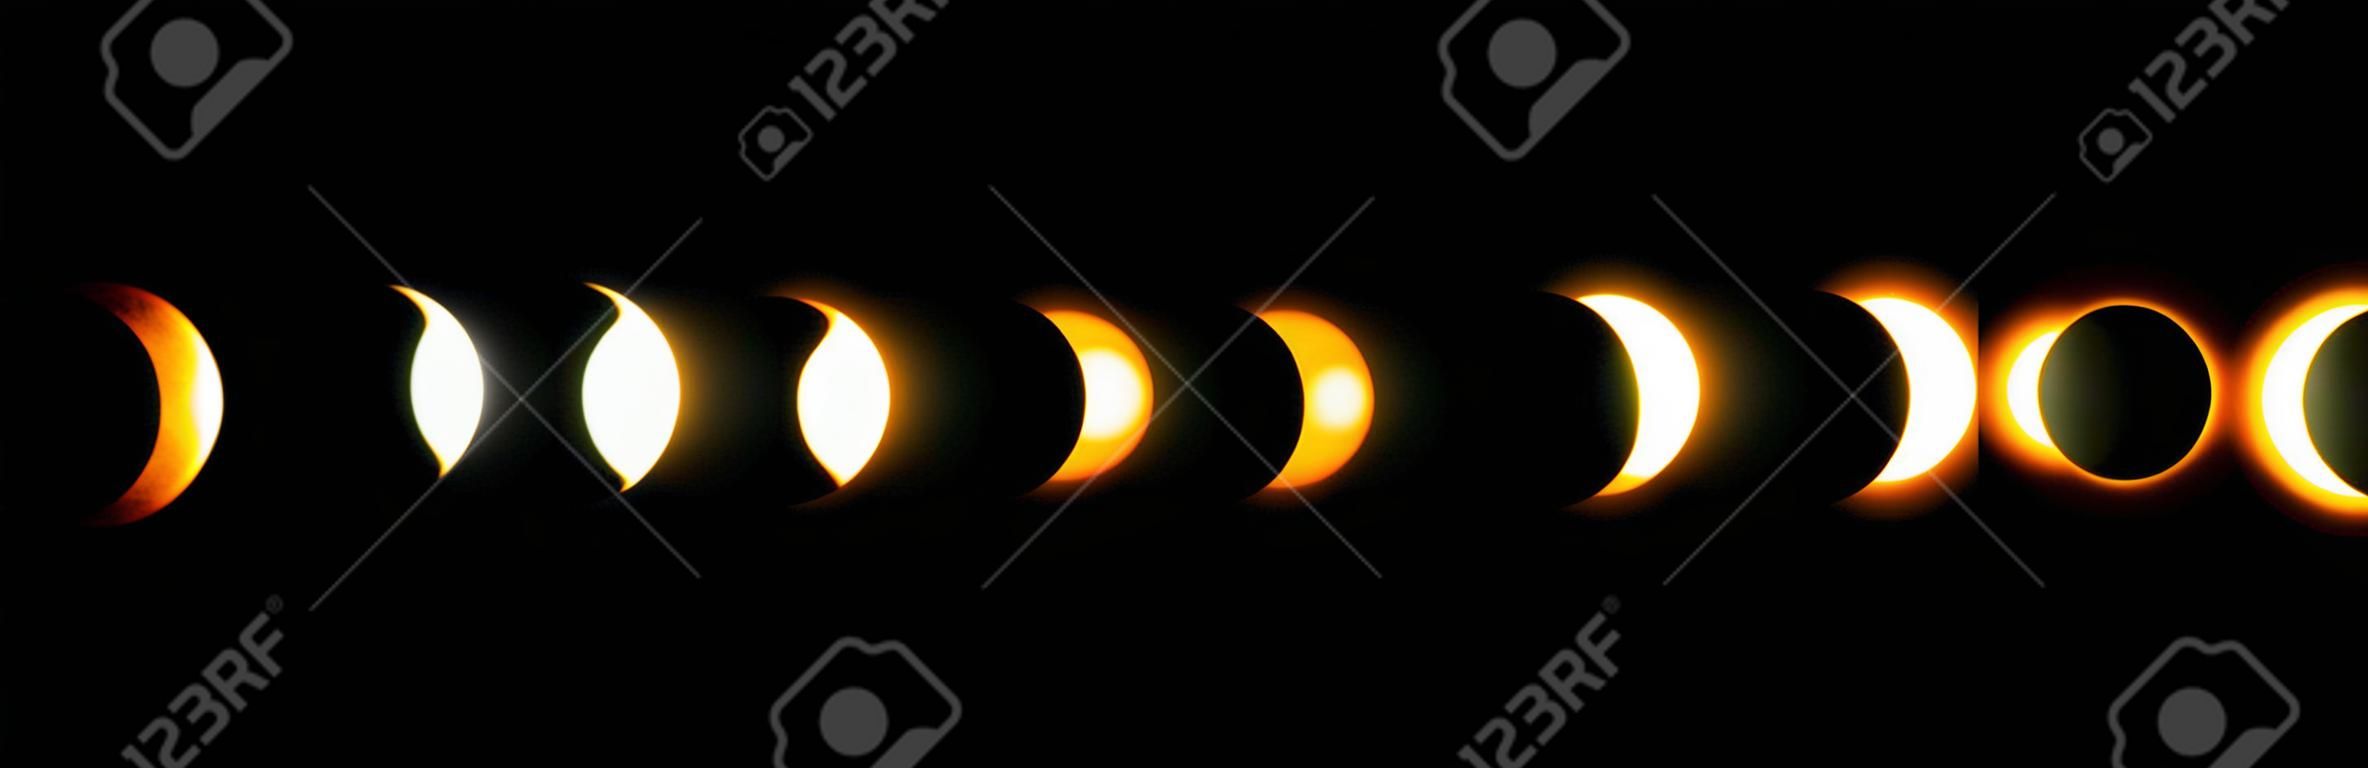 Diferentes fases de eclipse solar y lunar. Vector.